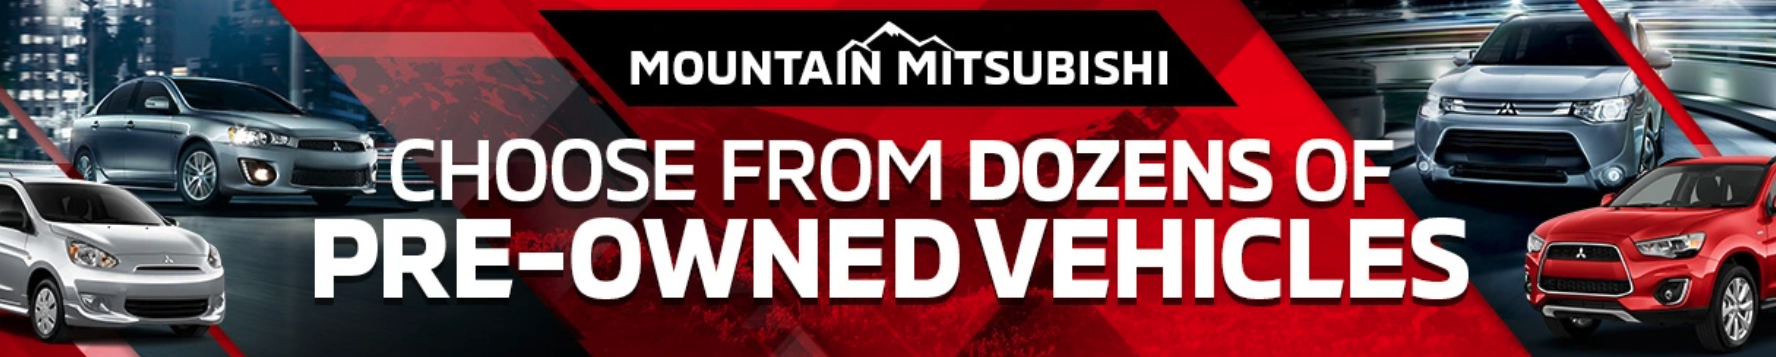 Mountain Mitsubishi - broken image